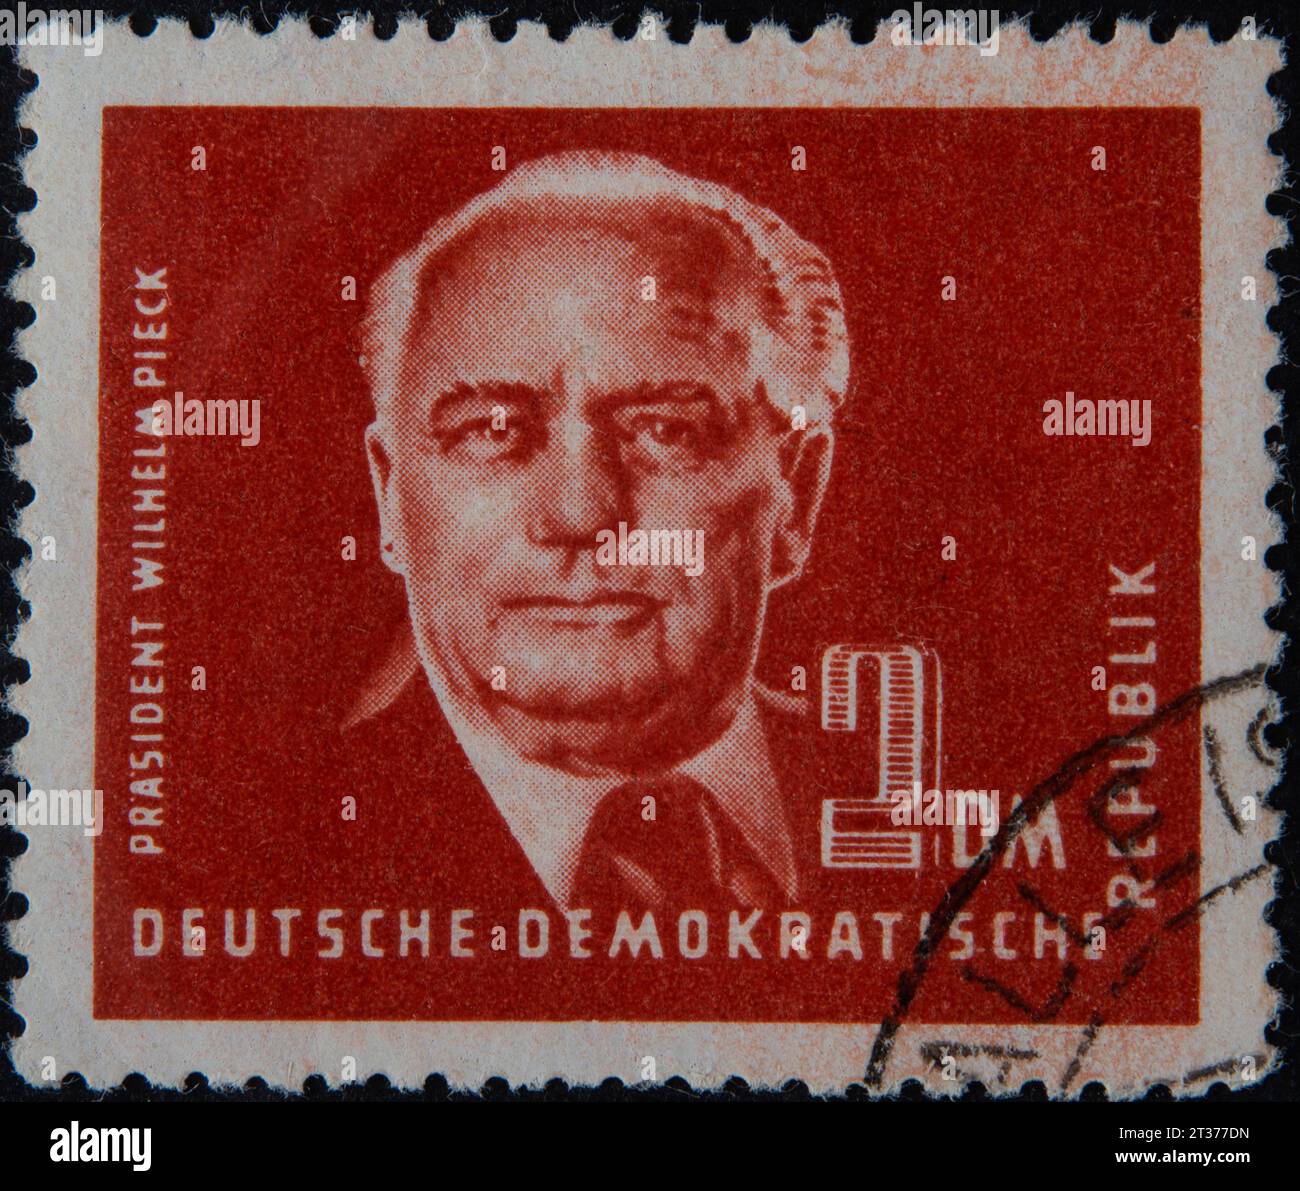 Wilhelm Pieck, deutscher Politiker und Kommunist und erster Präsident der DDR, Porträt auf einer Briefmarke, DDR, 1950 Stockfoto